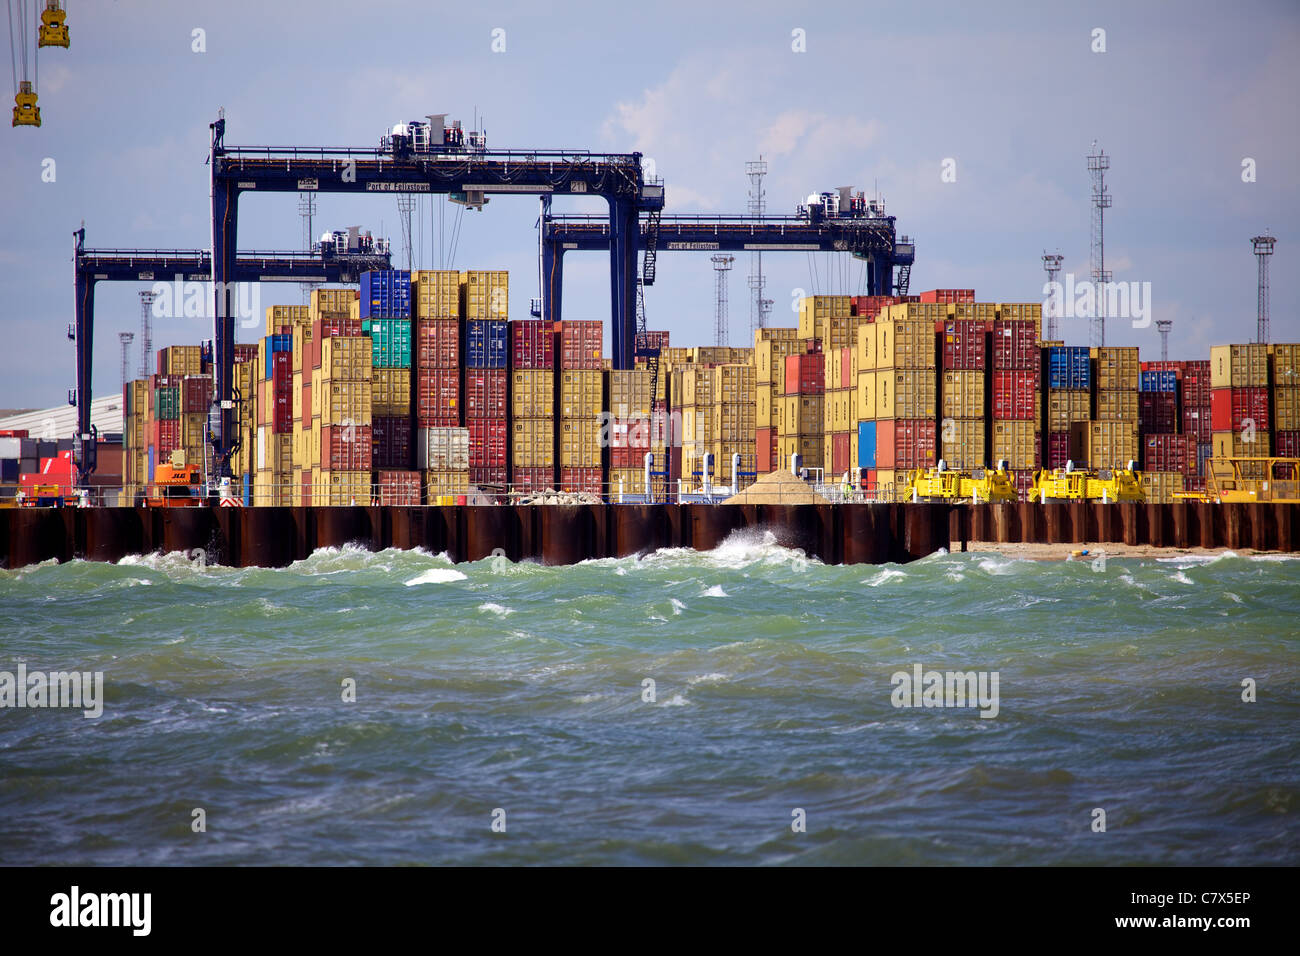 Global Britain International Trade - Port of Felixstowe International Trade - conteneurs empilés au port de Felixstowe au Royaume-Uni Banque D'Images